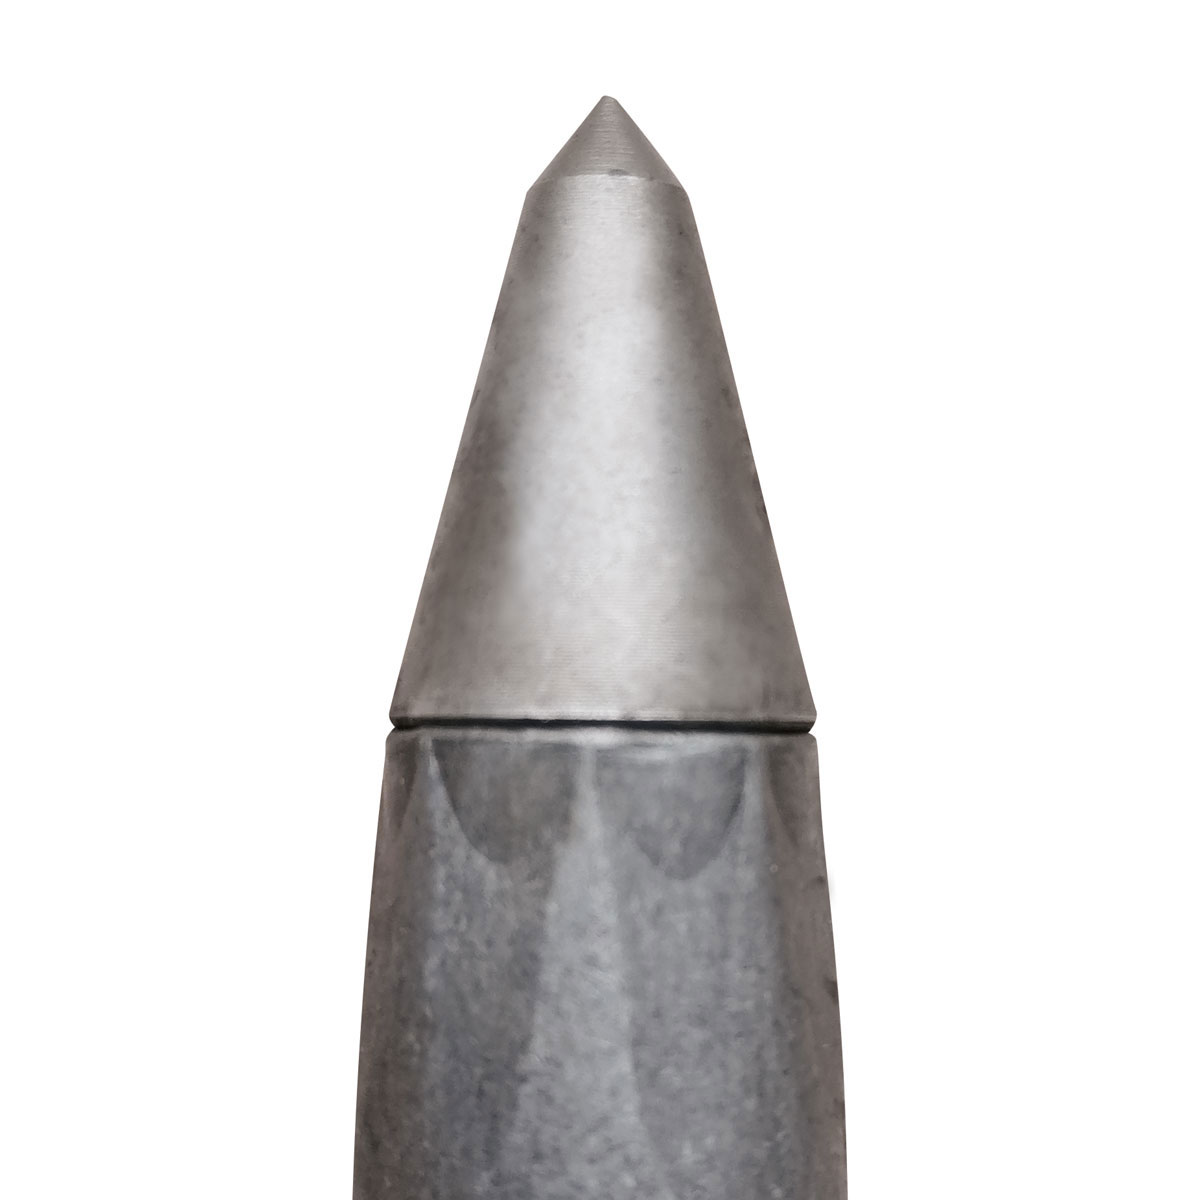 Eisenvermessungsrohre 3/8" - Länge 200 mm mit Stahlspitze